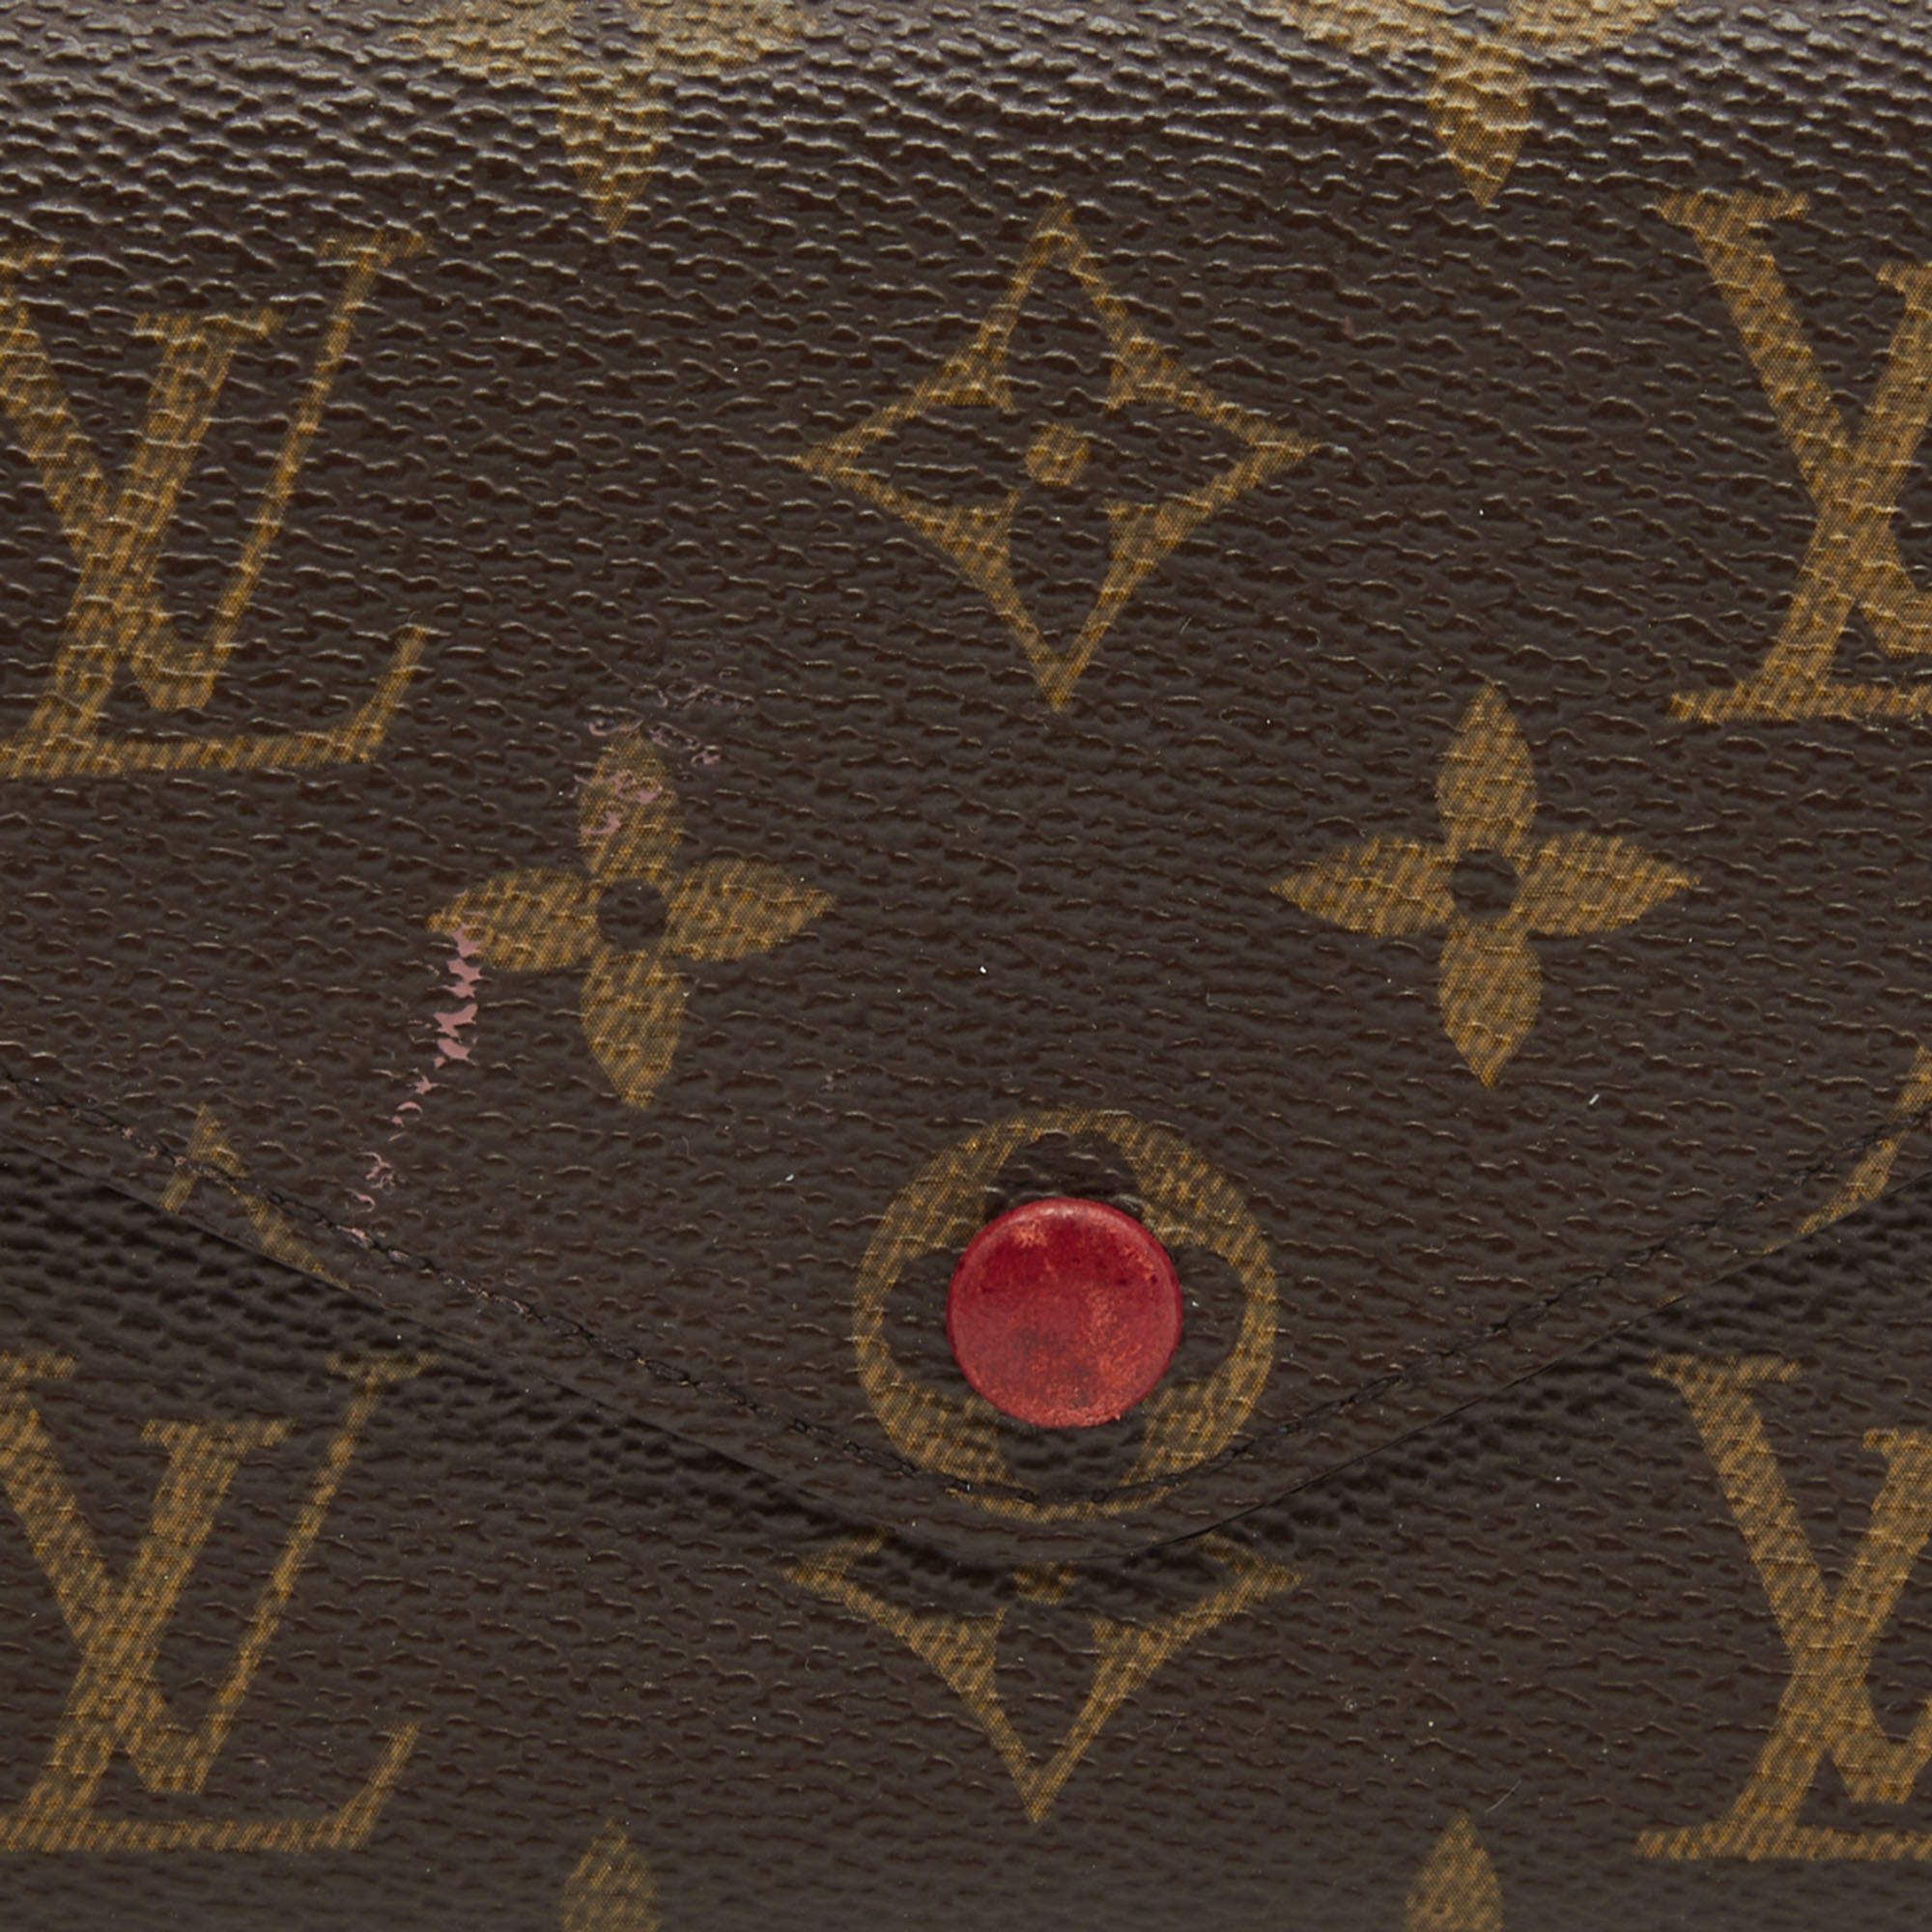 Louis Vuitton Josephine wallet – A Piece Lux